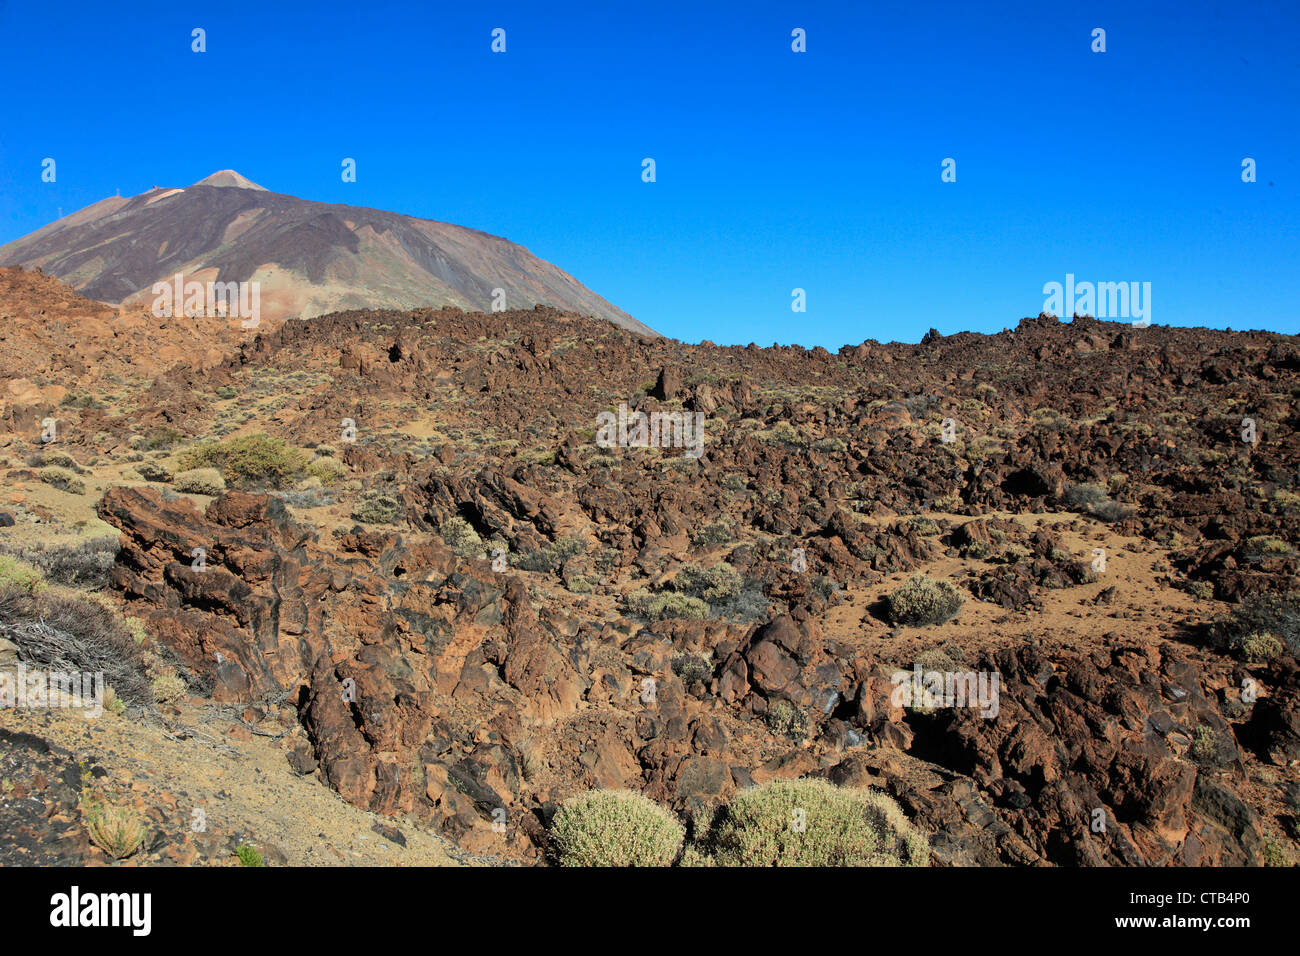 Spain, Canary Islands, Tenerife, Pico del Teide, volcano, Parque Nacional del Teide, Stock Photo